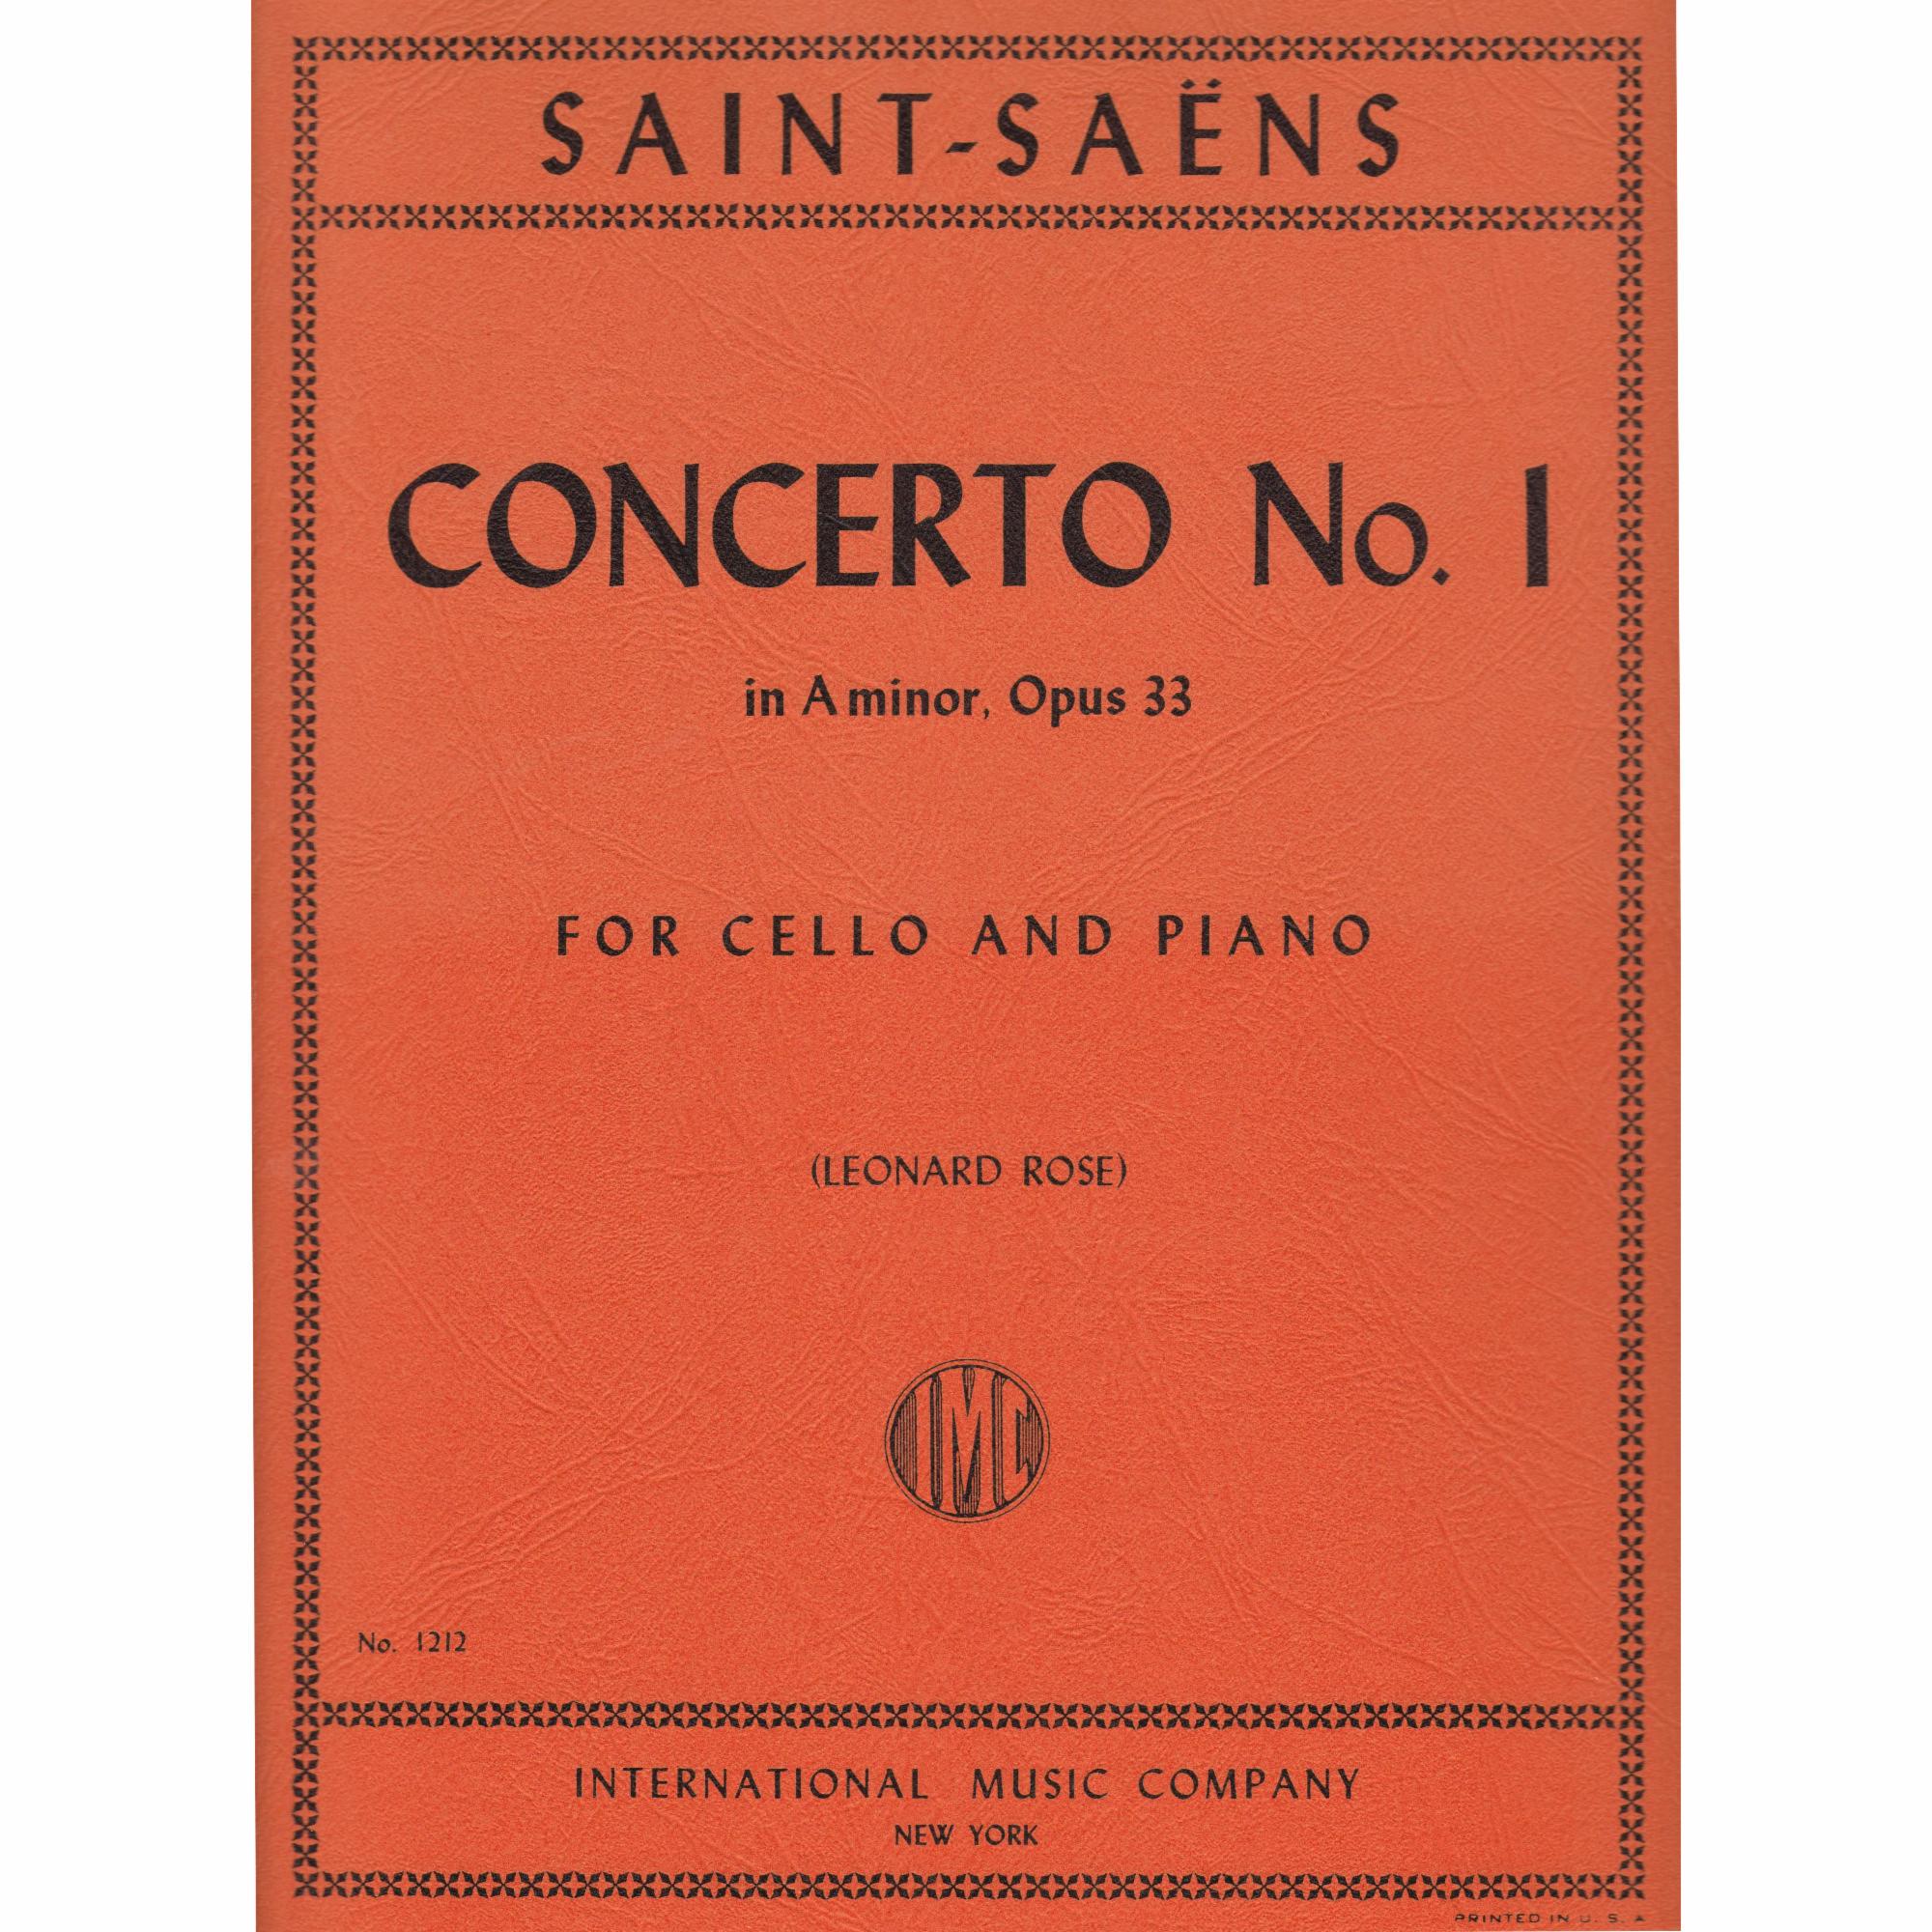 Cello Concerto No. 1 in A Minor, Op. 33